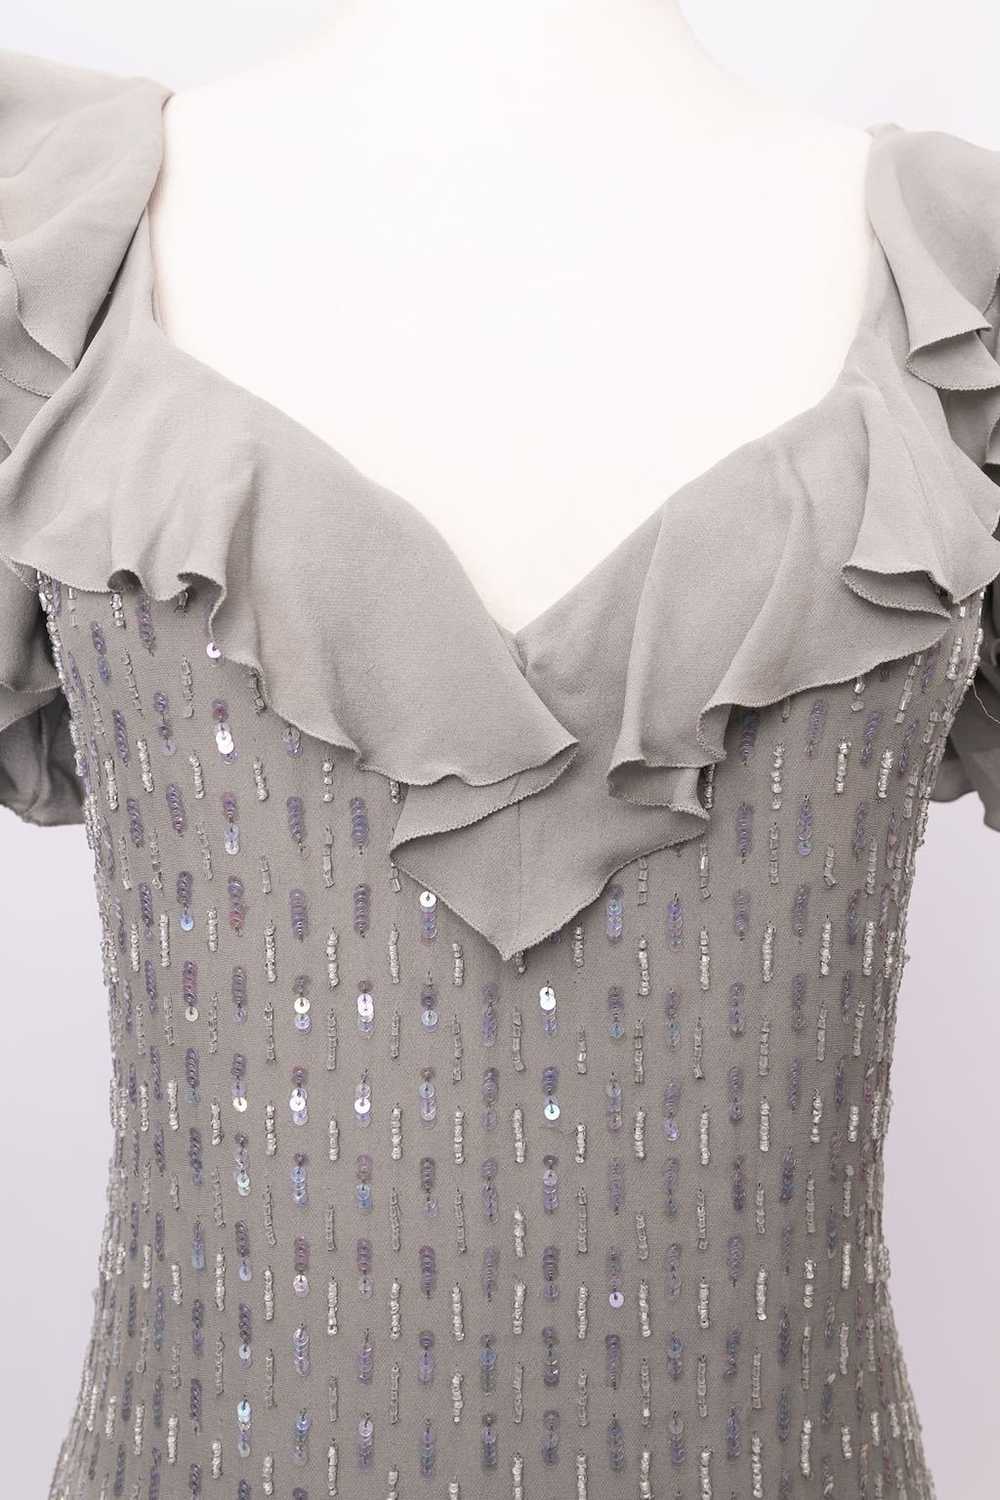 Loris Azzaro grey silk dress - image 5